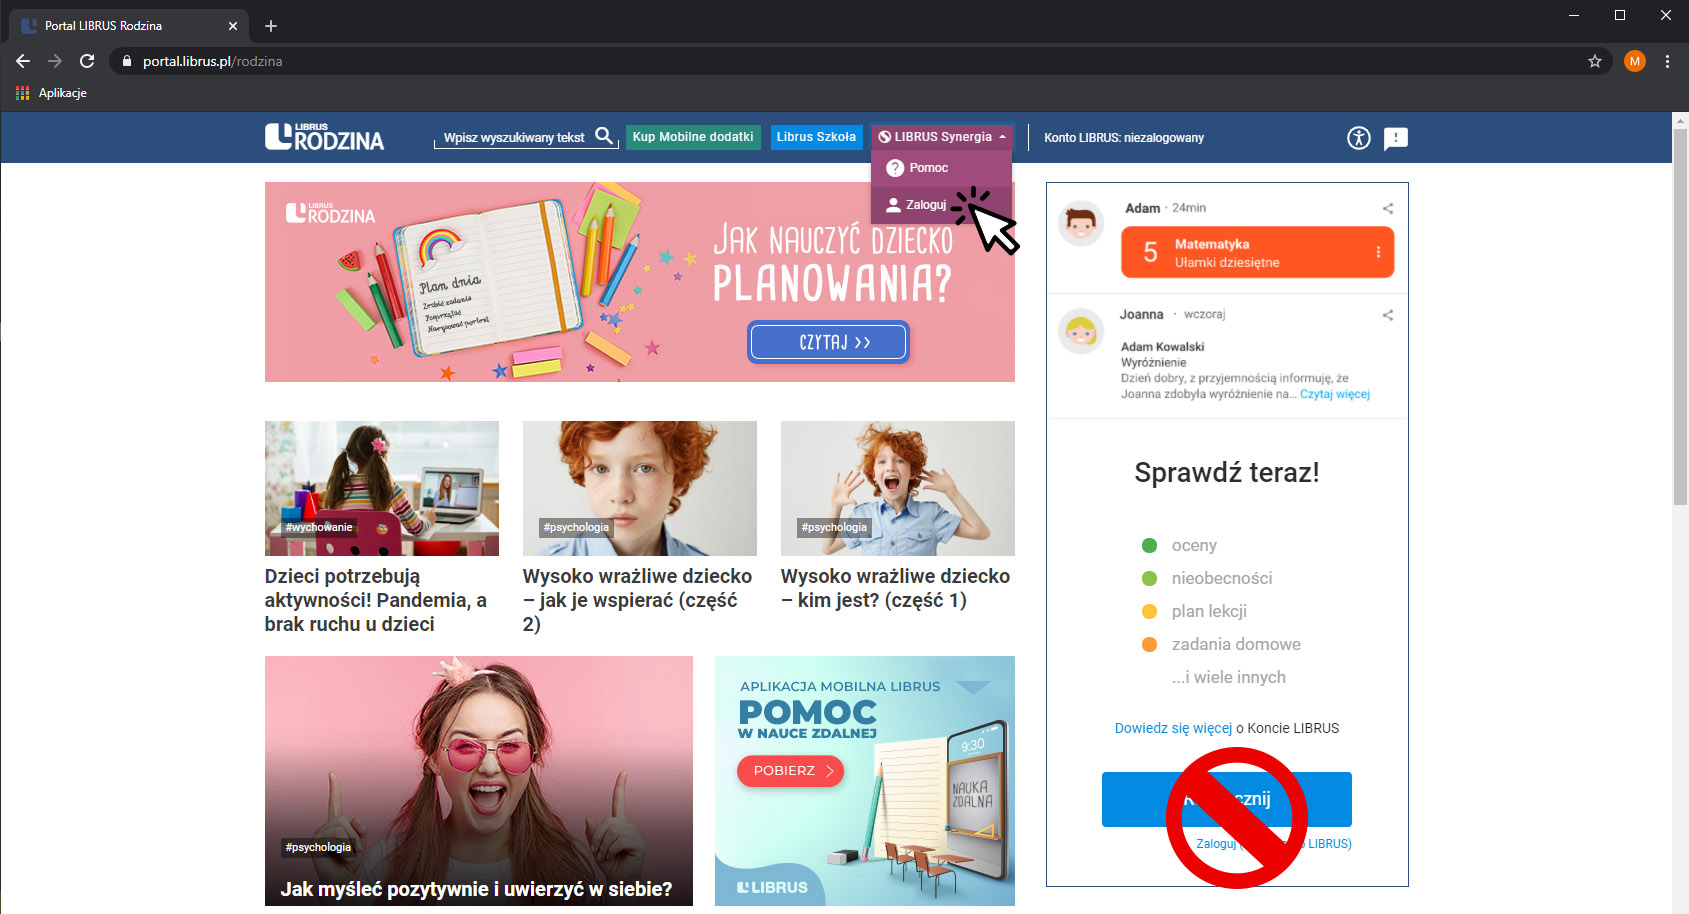 Obraz przedstawiający zrzut ekranu strony internetowej portal.librus.pl/rodzina, na której widoczne są kafelki z twarzami dzieci i rodziców. W górnej częścistrony znajduje się widoczna duża strzałka wskazująca na napis Librus Synergia Zaloguj.